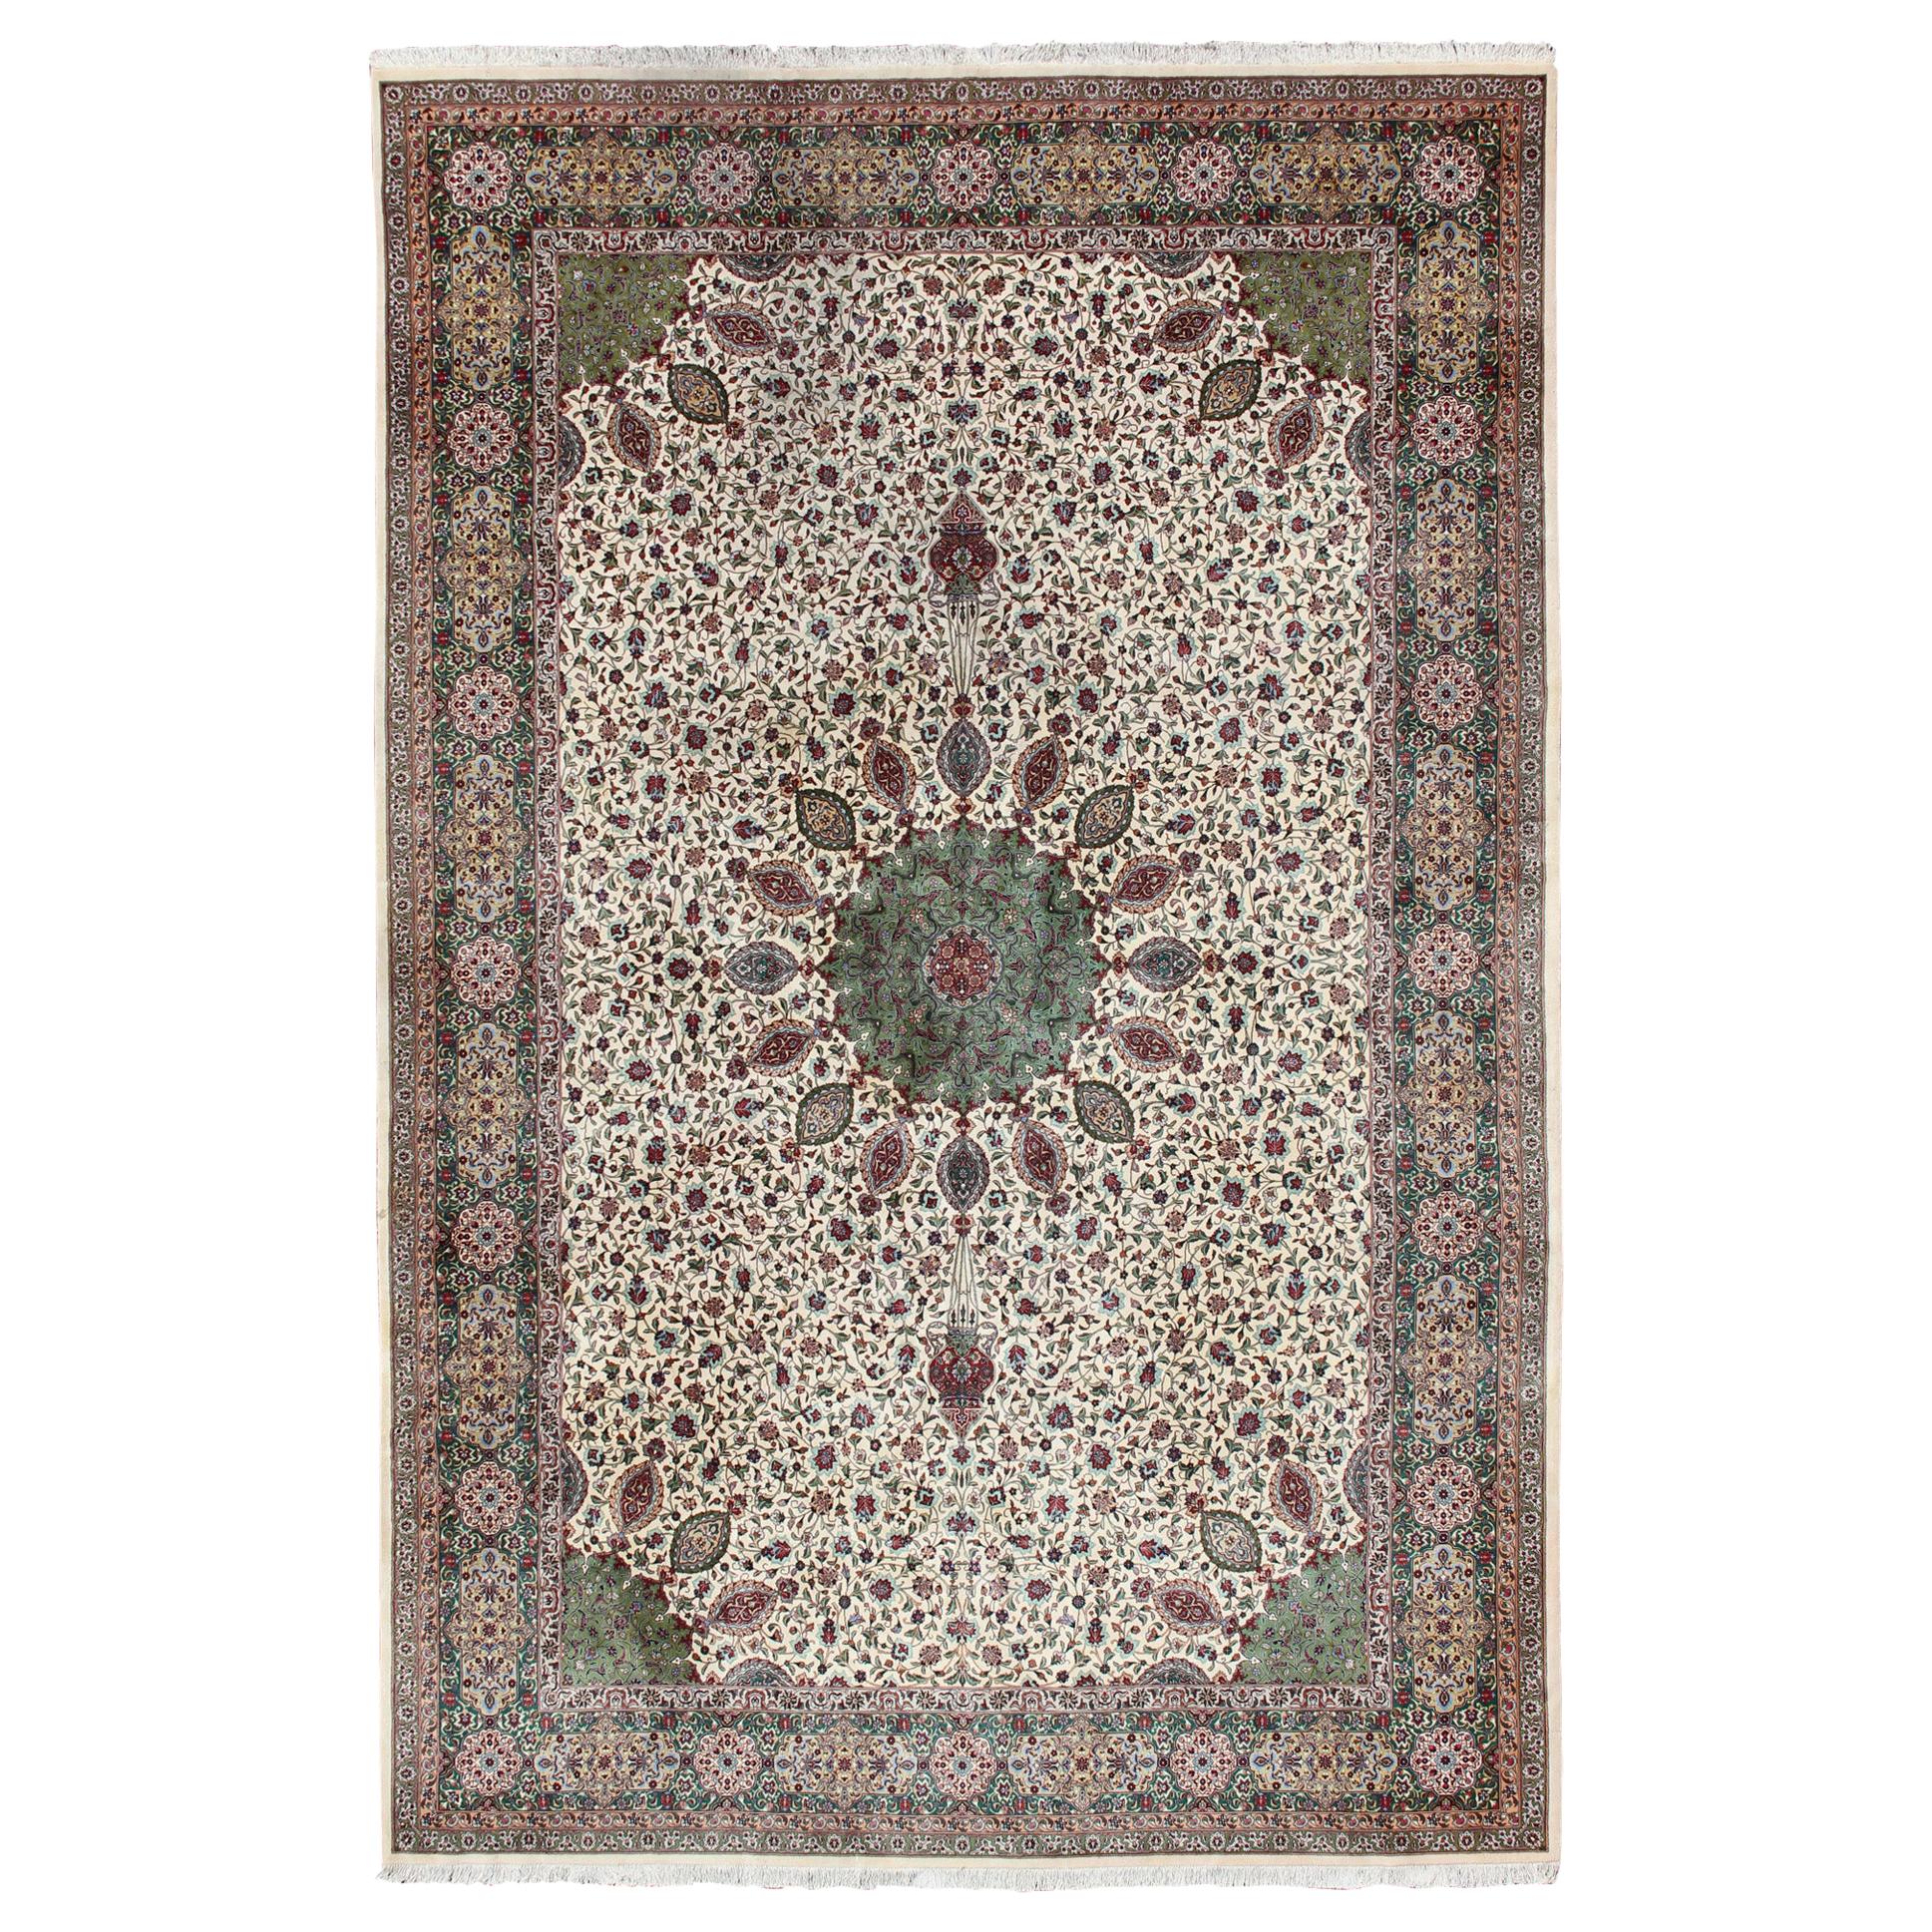 Grand tapis persan vintage de Tabriz à motif de médaillon floral